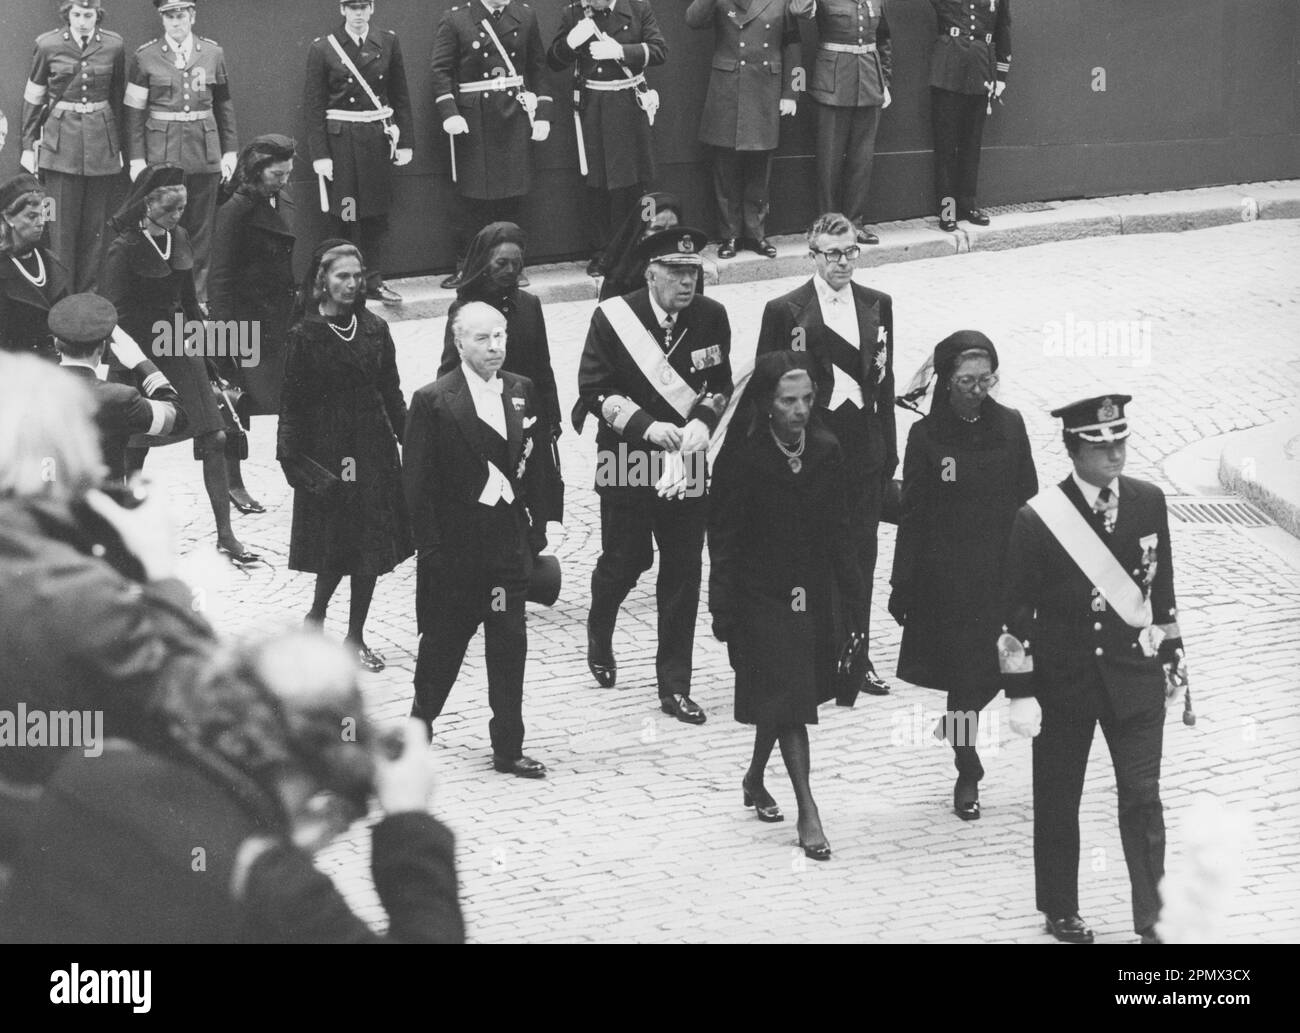 Carl XVI Gustaf, roi de Suède. Né le 30 avril 1946. Photo le 25 septembre 1973 aux funérailles de son grand-père, le roi Gustaf VI Adolf. Assister aux funérailles également Reine Ingrid du Danemark, princesse Christina de Suède, prince Bertil, prince Sigvard. Banque D'Images